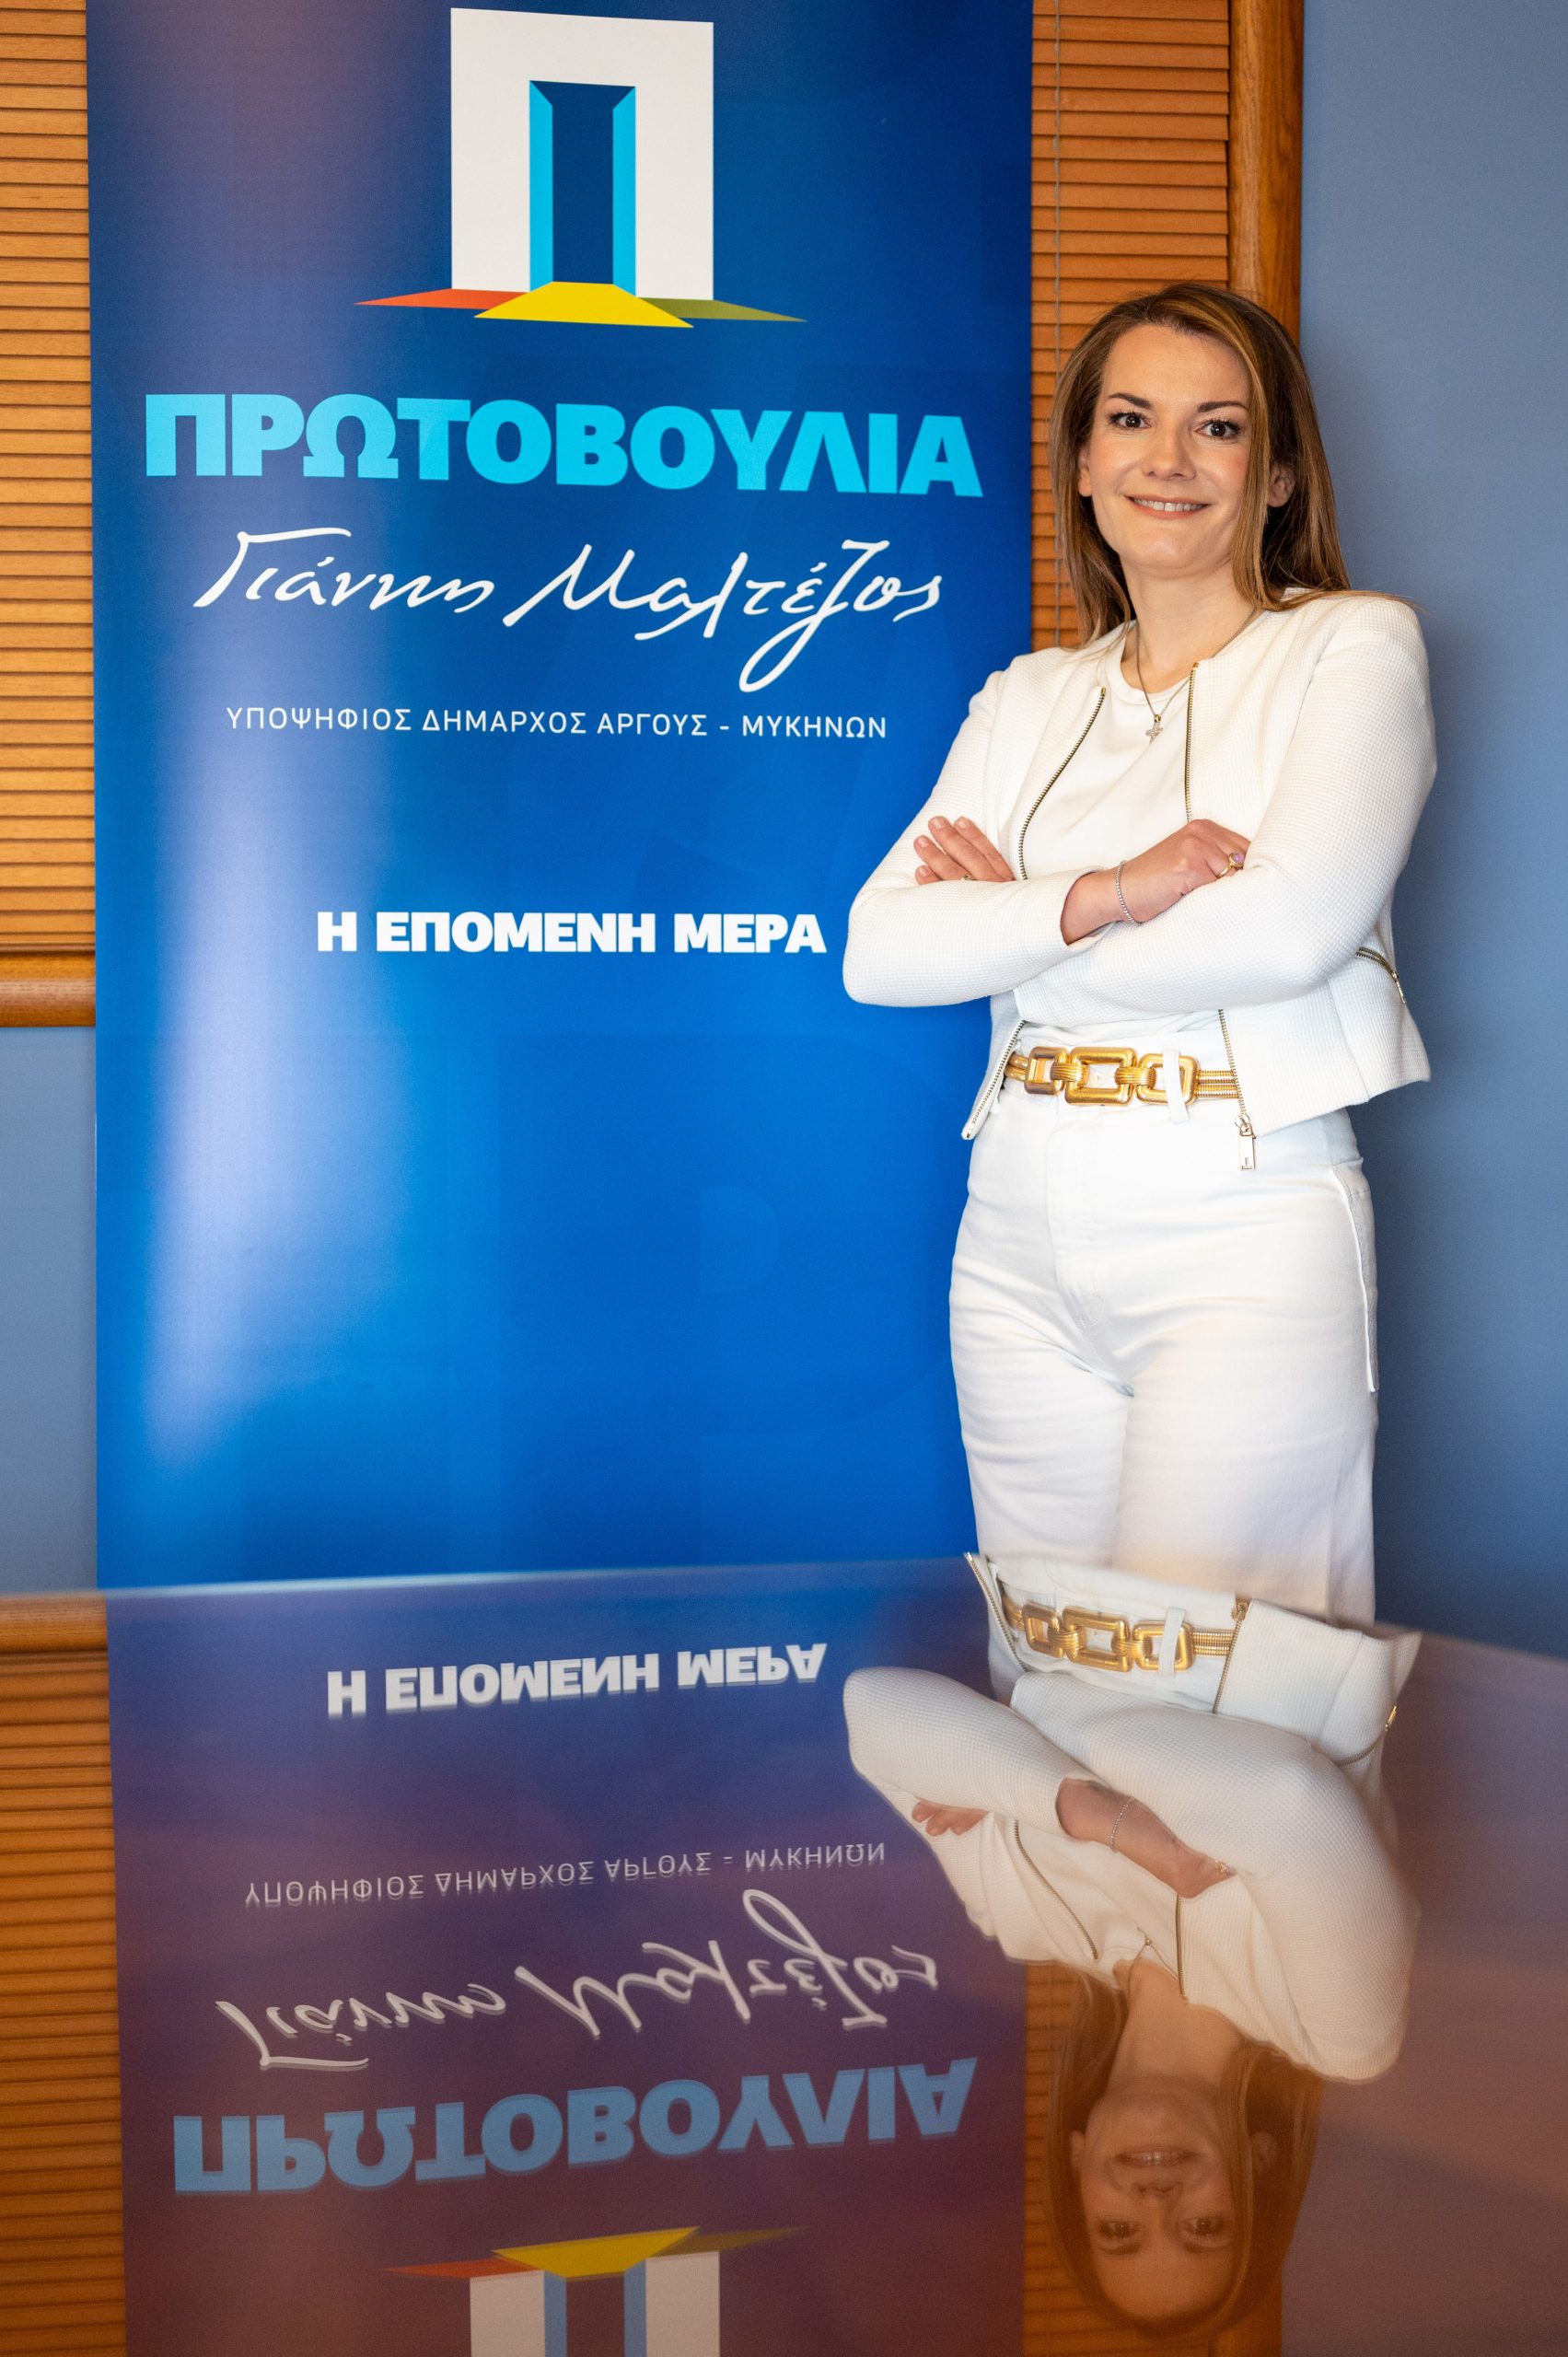 Σάσσα Αναστασία Αργυροπούλου, Πρωτοβουλία